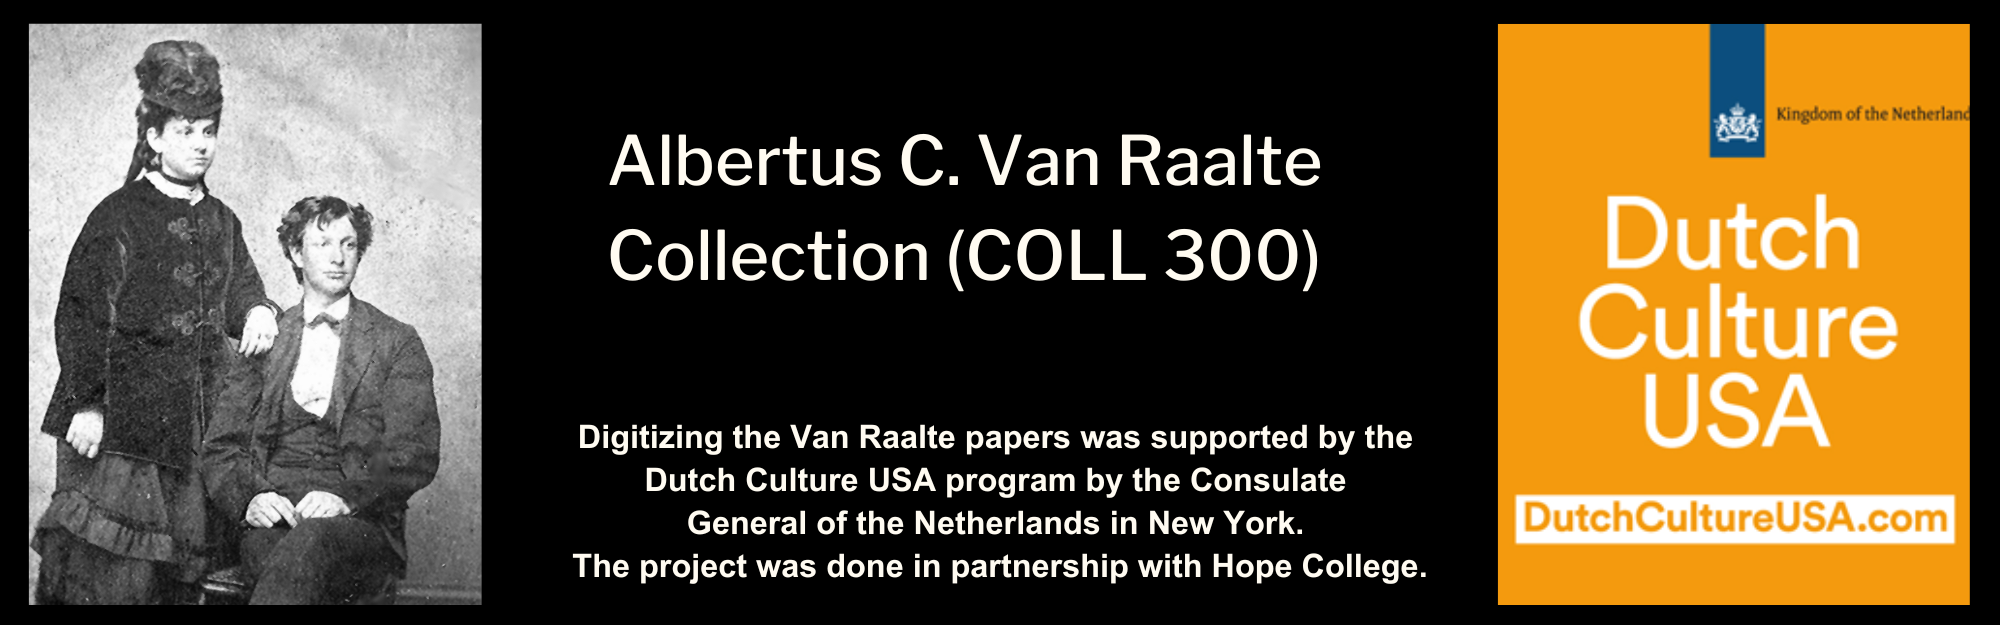 Albertus C. Van Raalte Collection (COLL 300)